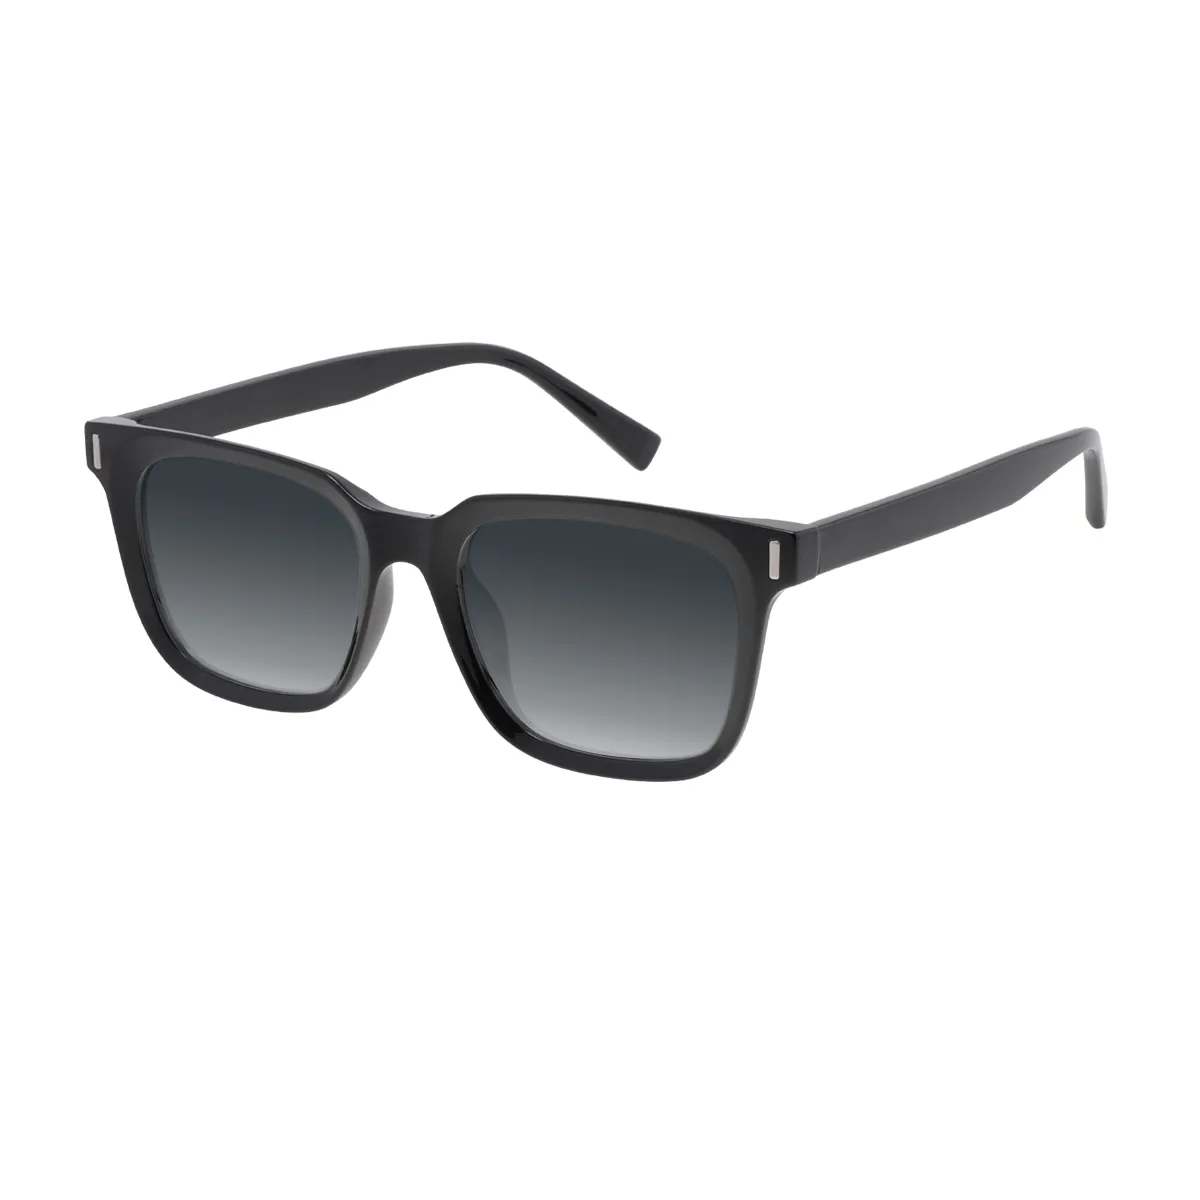 Shay - Square Black Sunglasses for Men & Women